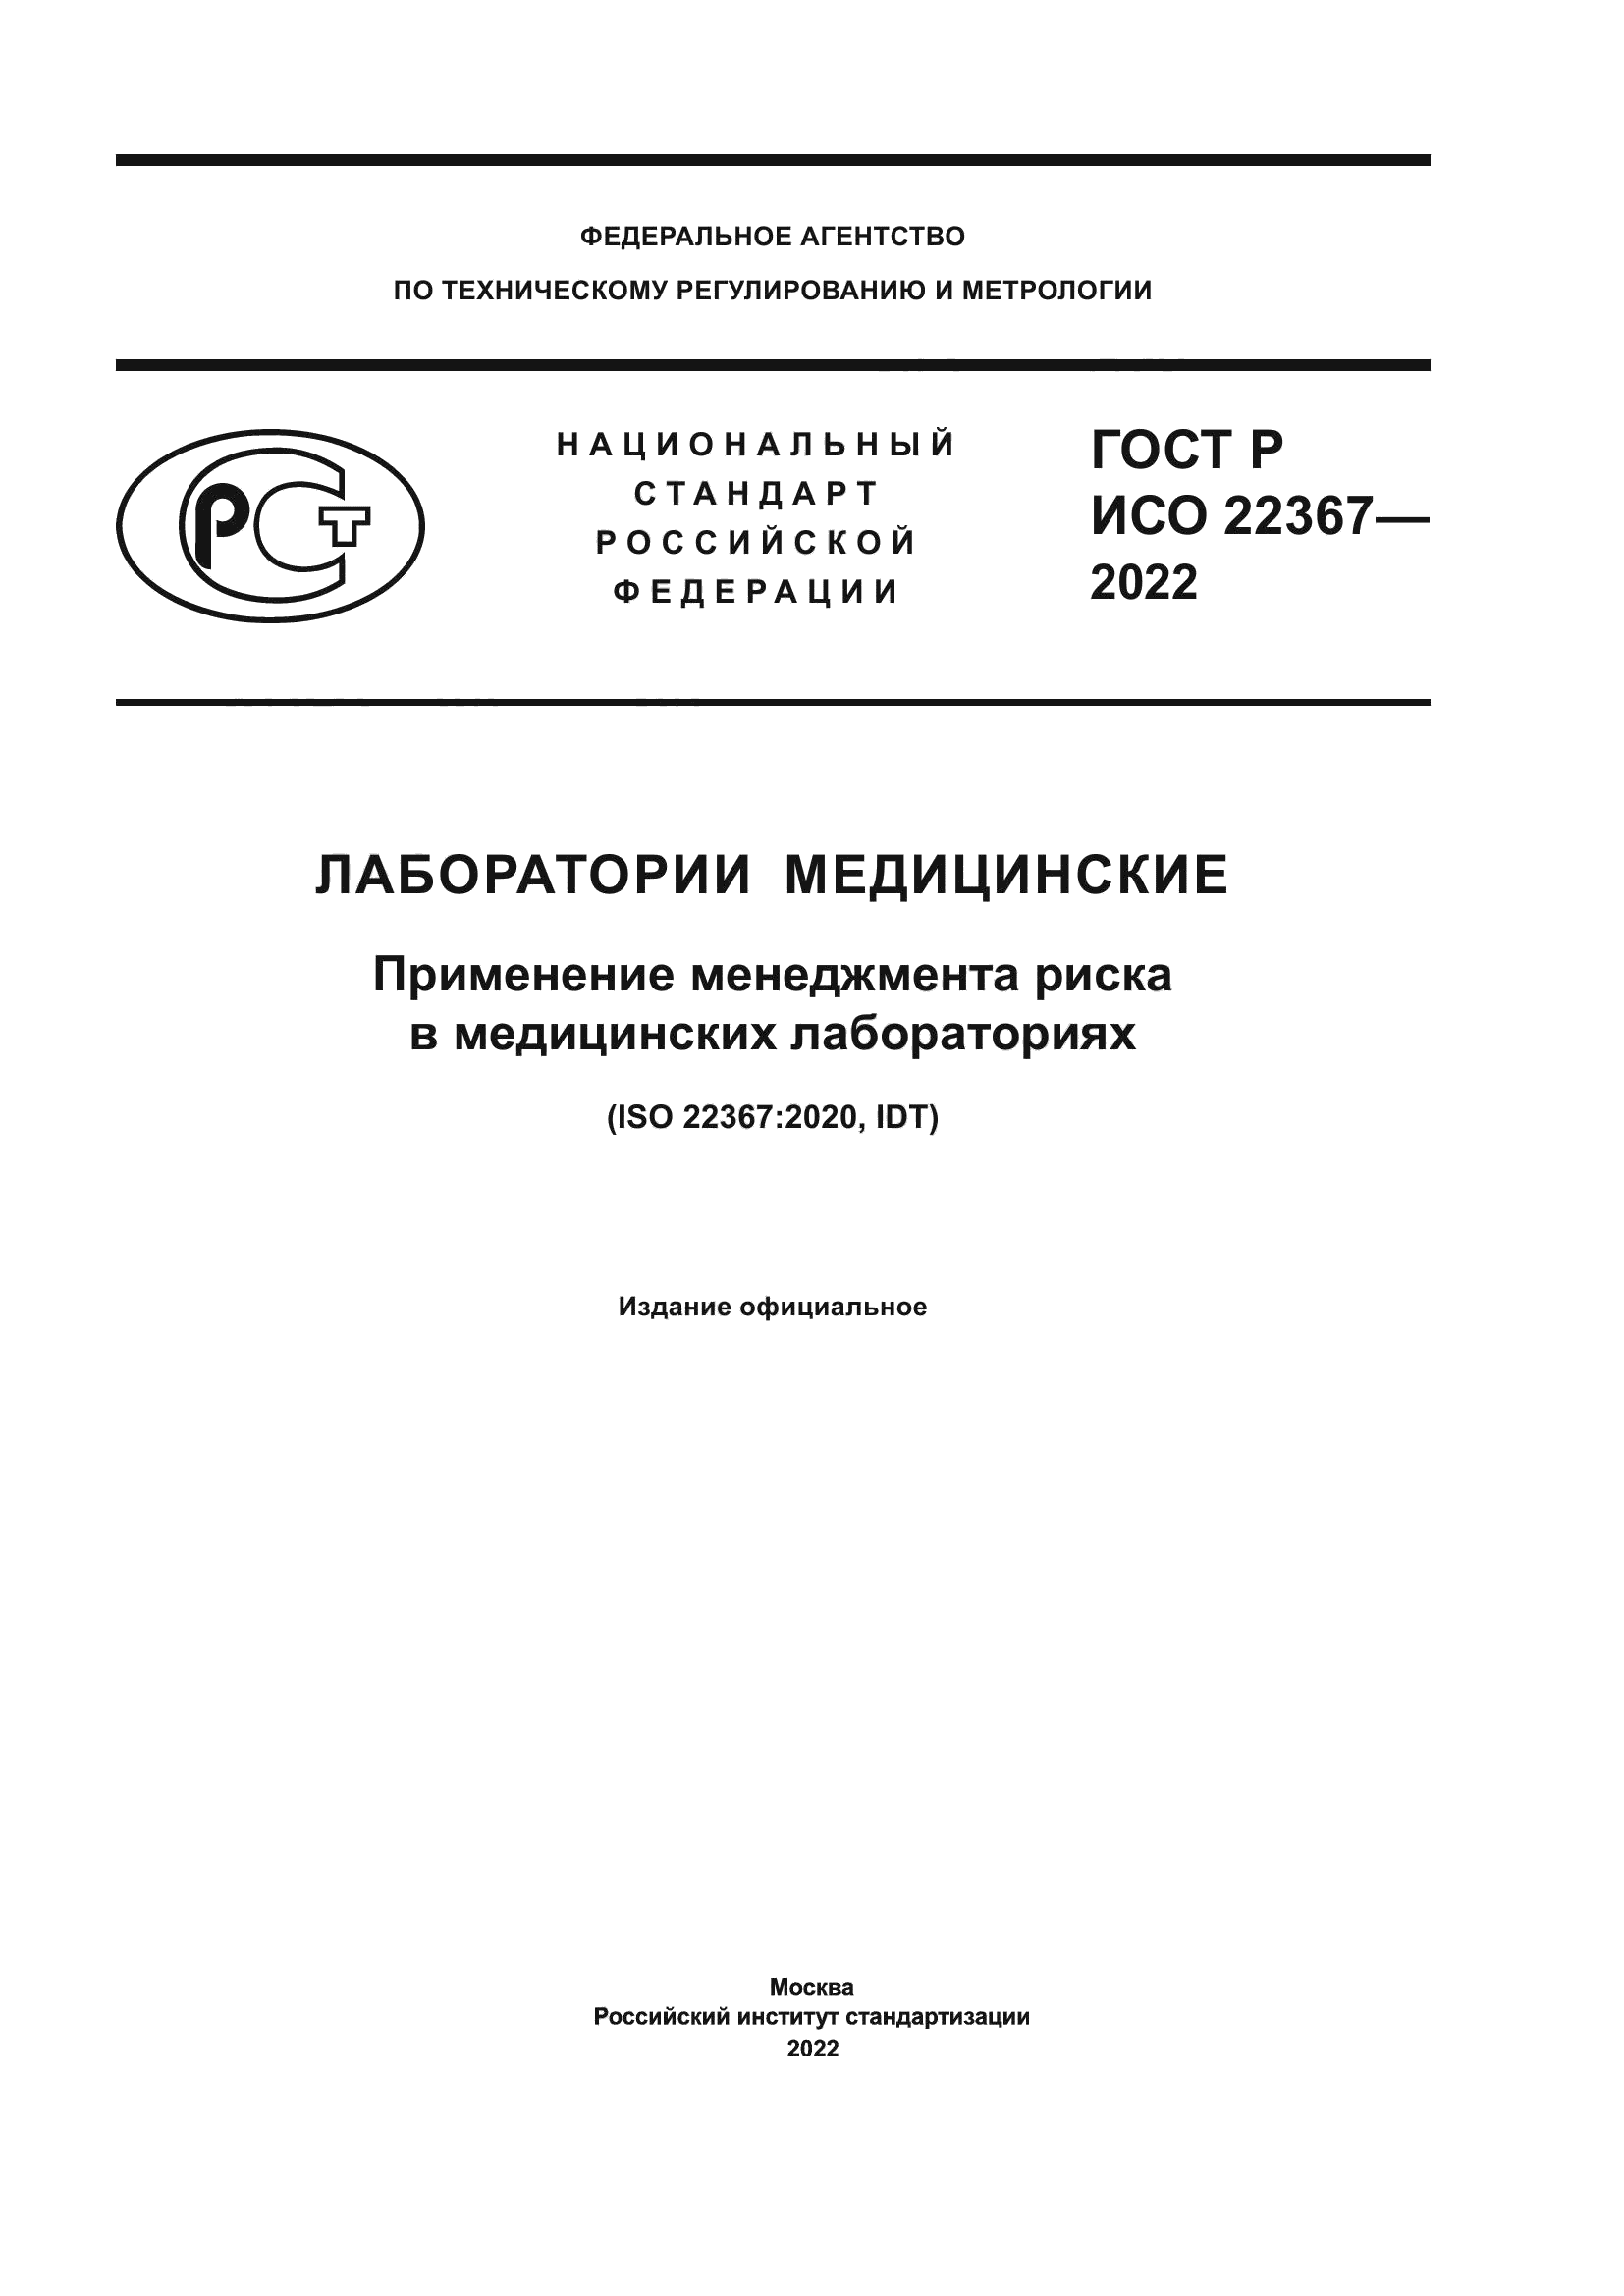 ГОСТ Р ИСО 22367-2022